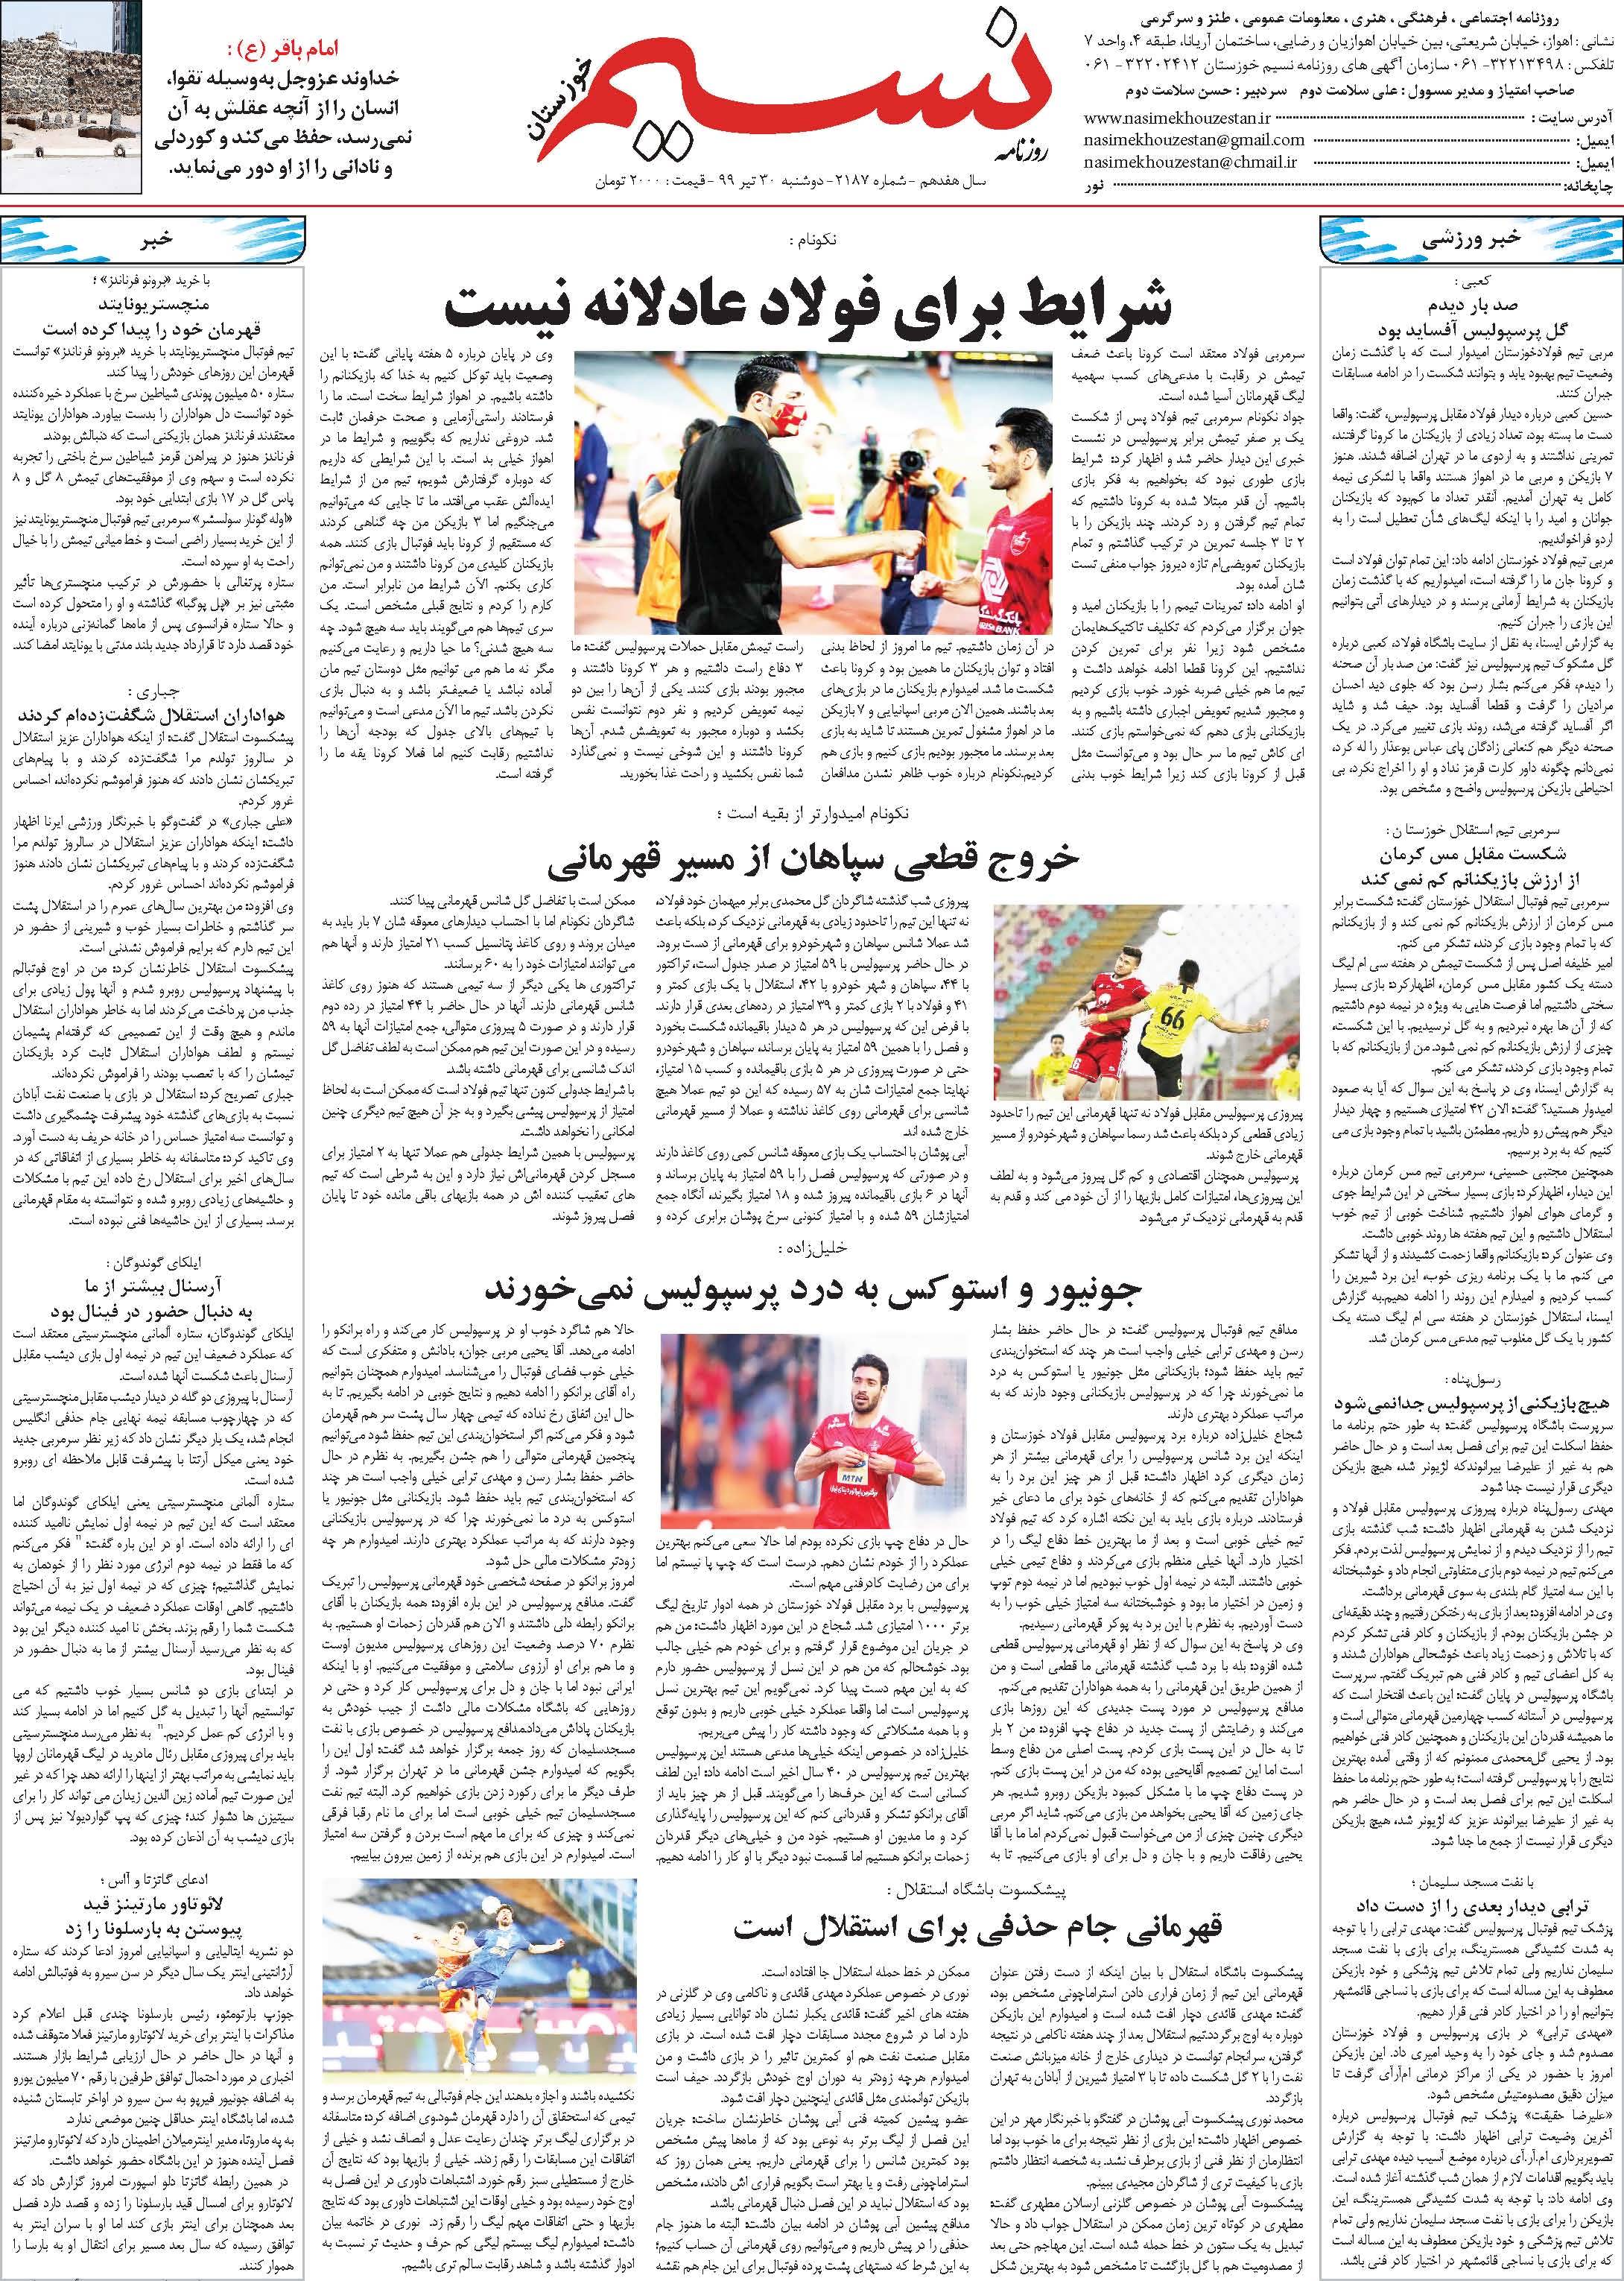 صفحه آخر روزنامه نسیم شماره 2187